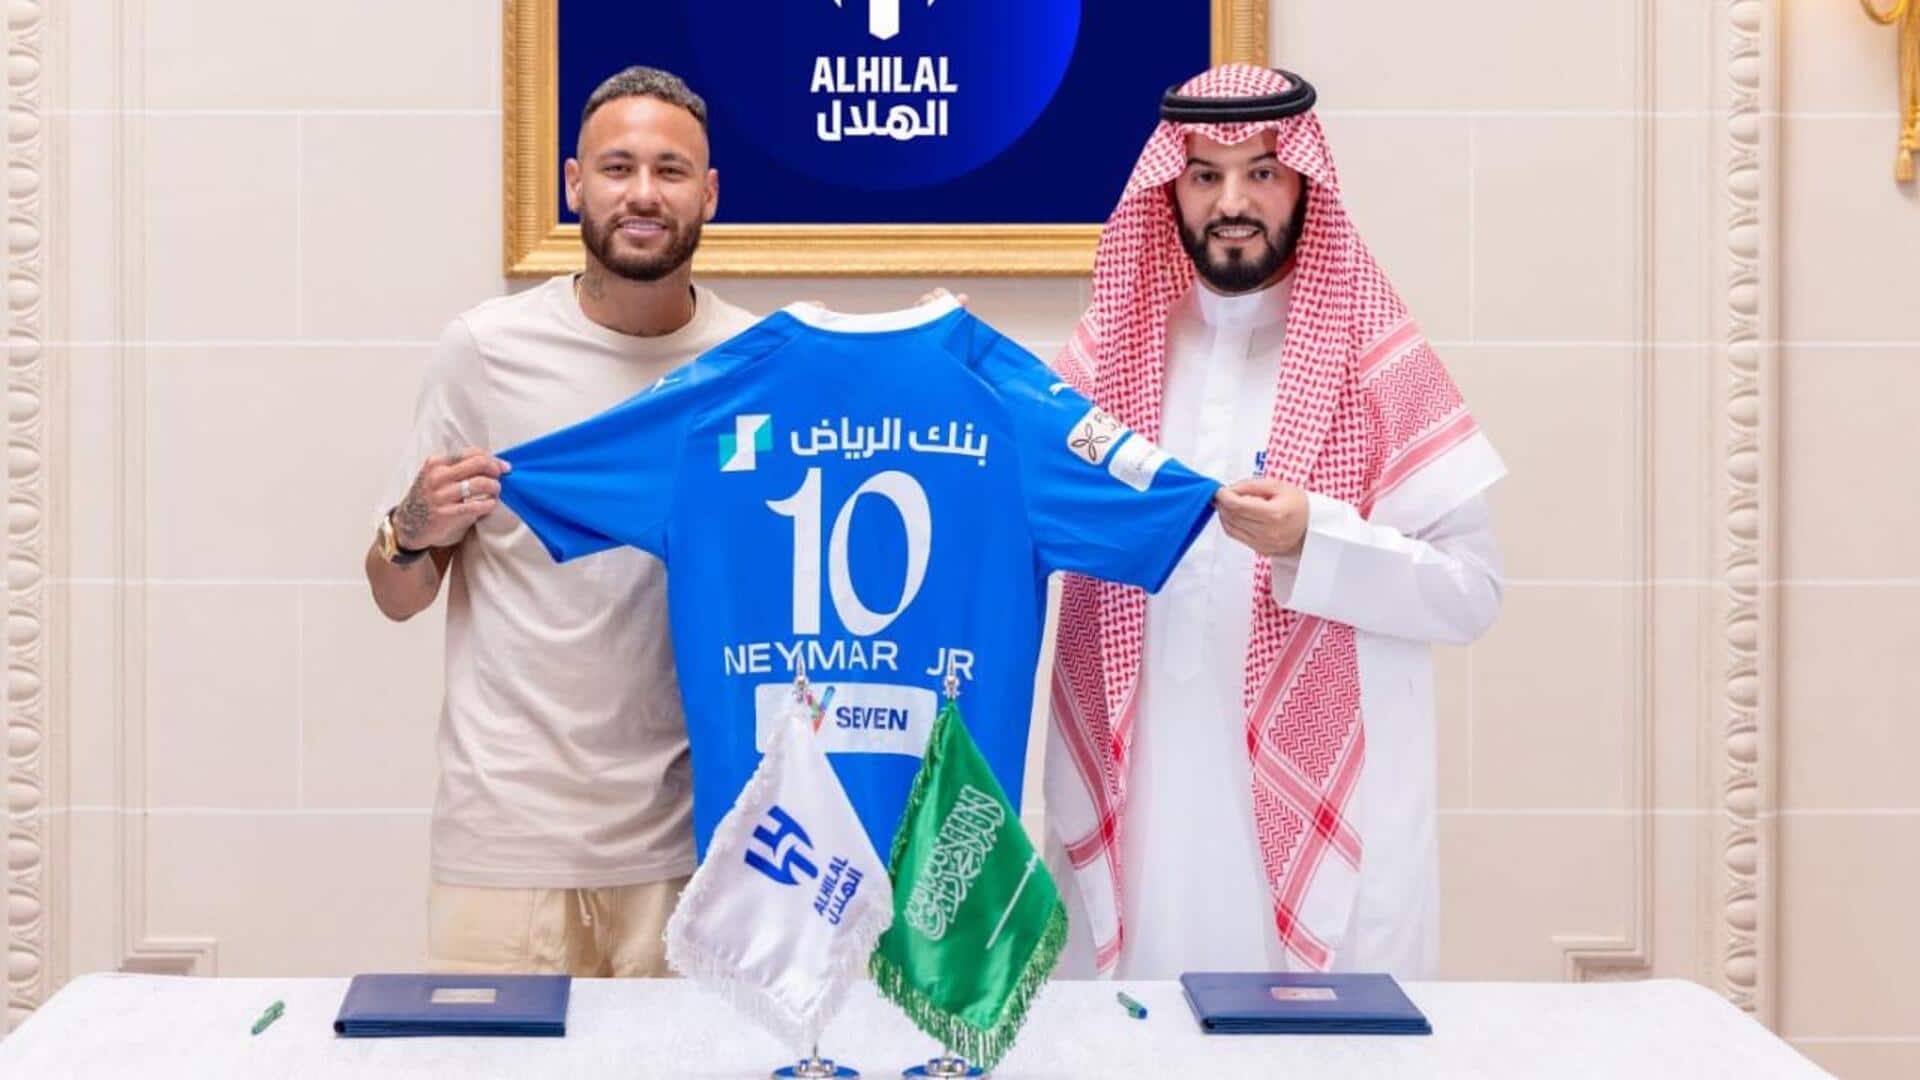 सऊदी अरब ने लगाई यूरोपीयन फुटबॉल में सेंध, कई दिग्गज खिलाड़ियों को अपने साथ जोड़ा